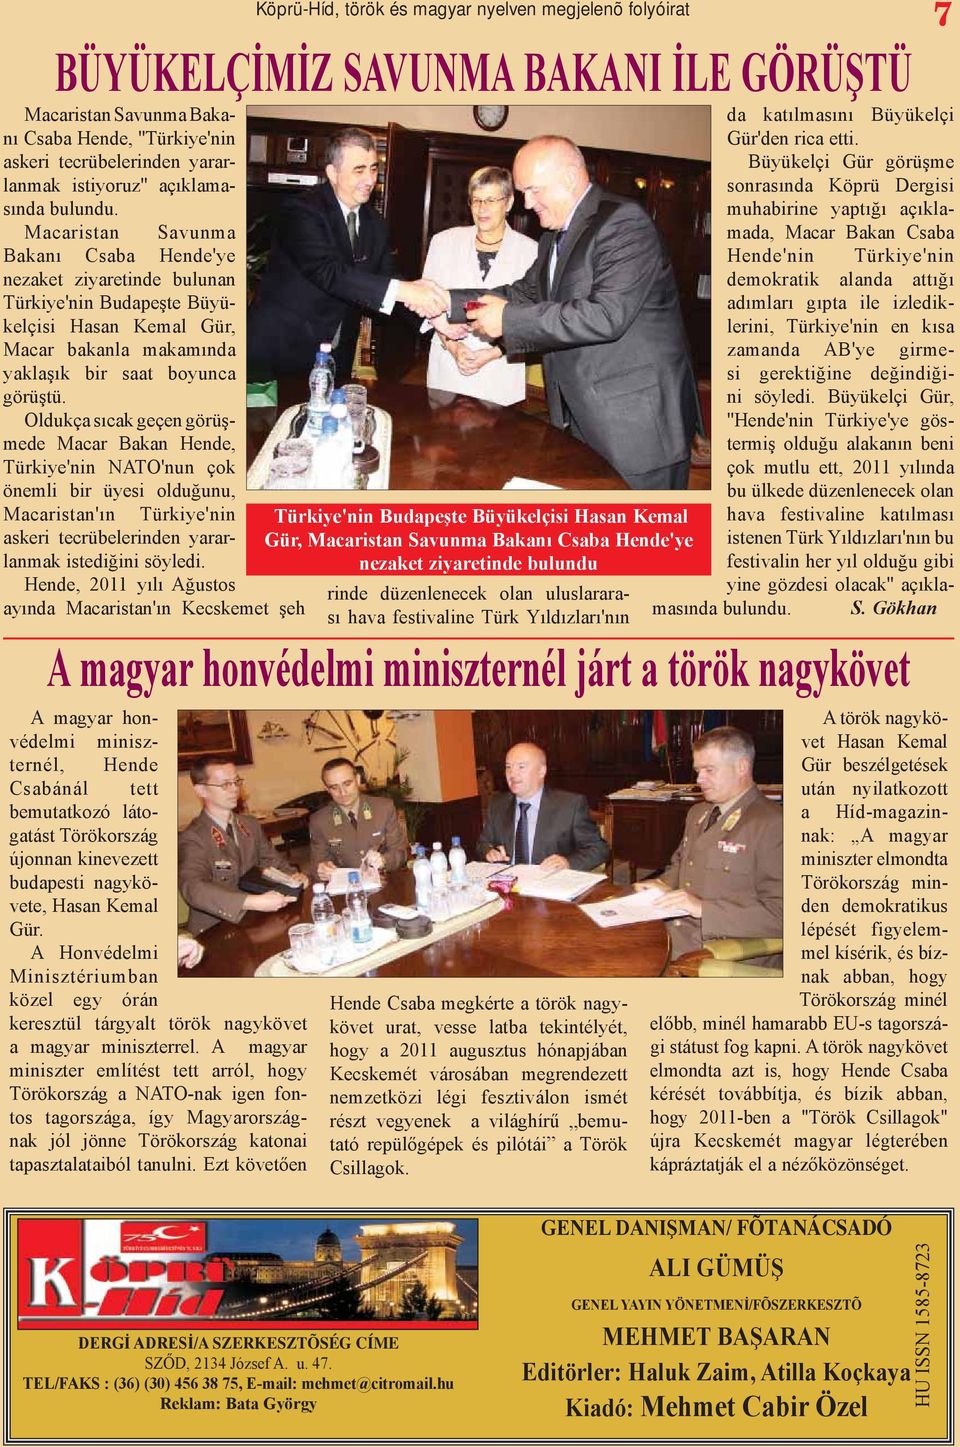 Oldukça sıcak geçen görüşmede Macar Bakan Hende, Türkiye'nin NATO'nun çok önemli bir üyesi olduğunu, Macaristan'ın Türkiye'nin askeri tecrübelerinden yararlanmak istediğini söyledi.